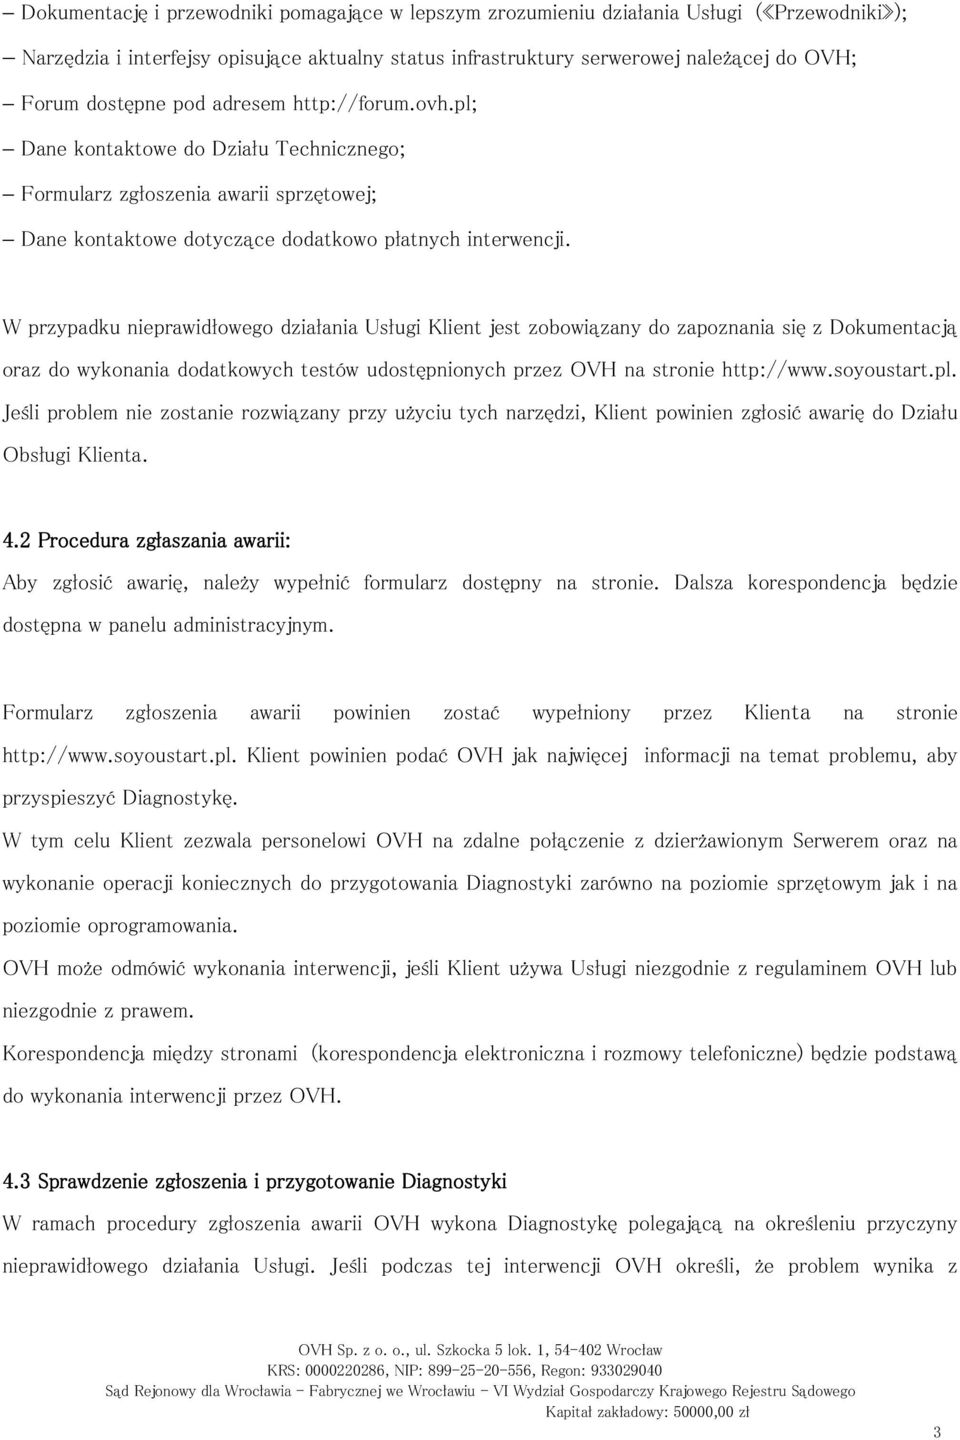 W przypadku nieprawidłowego działania Usługi Klient jest zobowiązany do zapoznania się z Dokumentacją oraz do wykonania dodatkowych testów udostępnionych przez OVH na stronie http://www.soyoustart.pl.